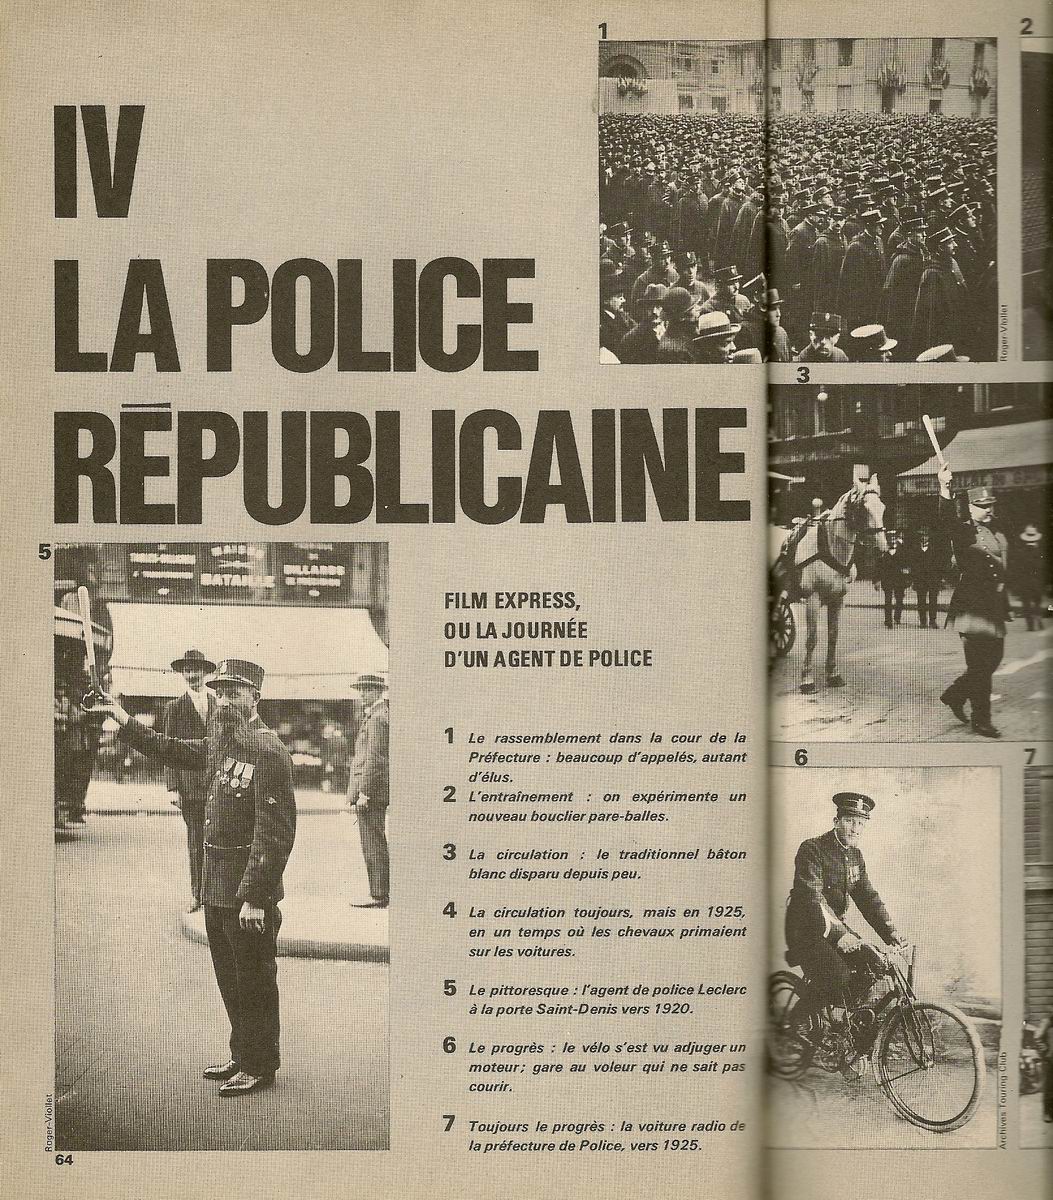 Histoire de la police française